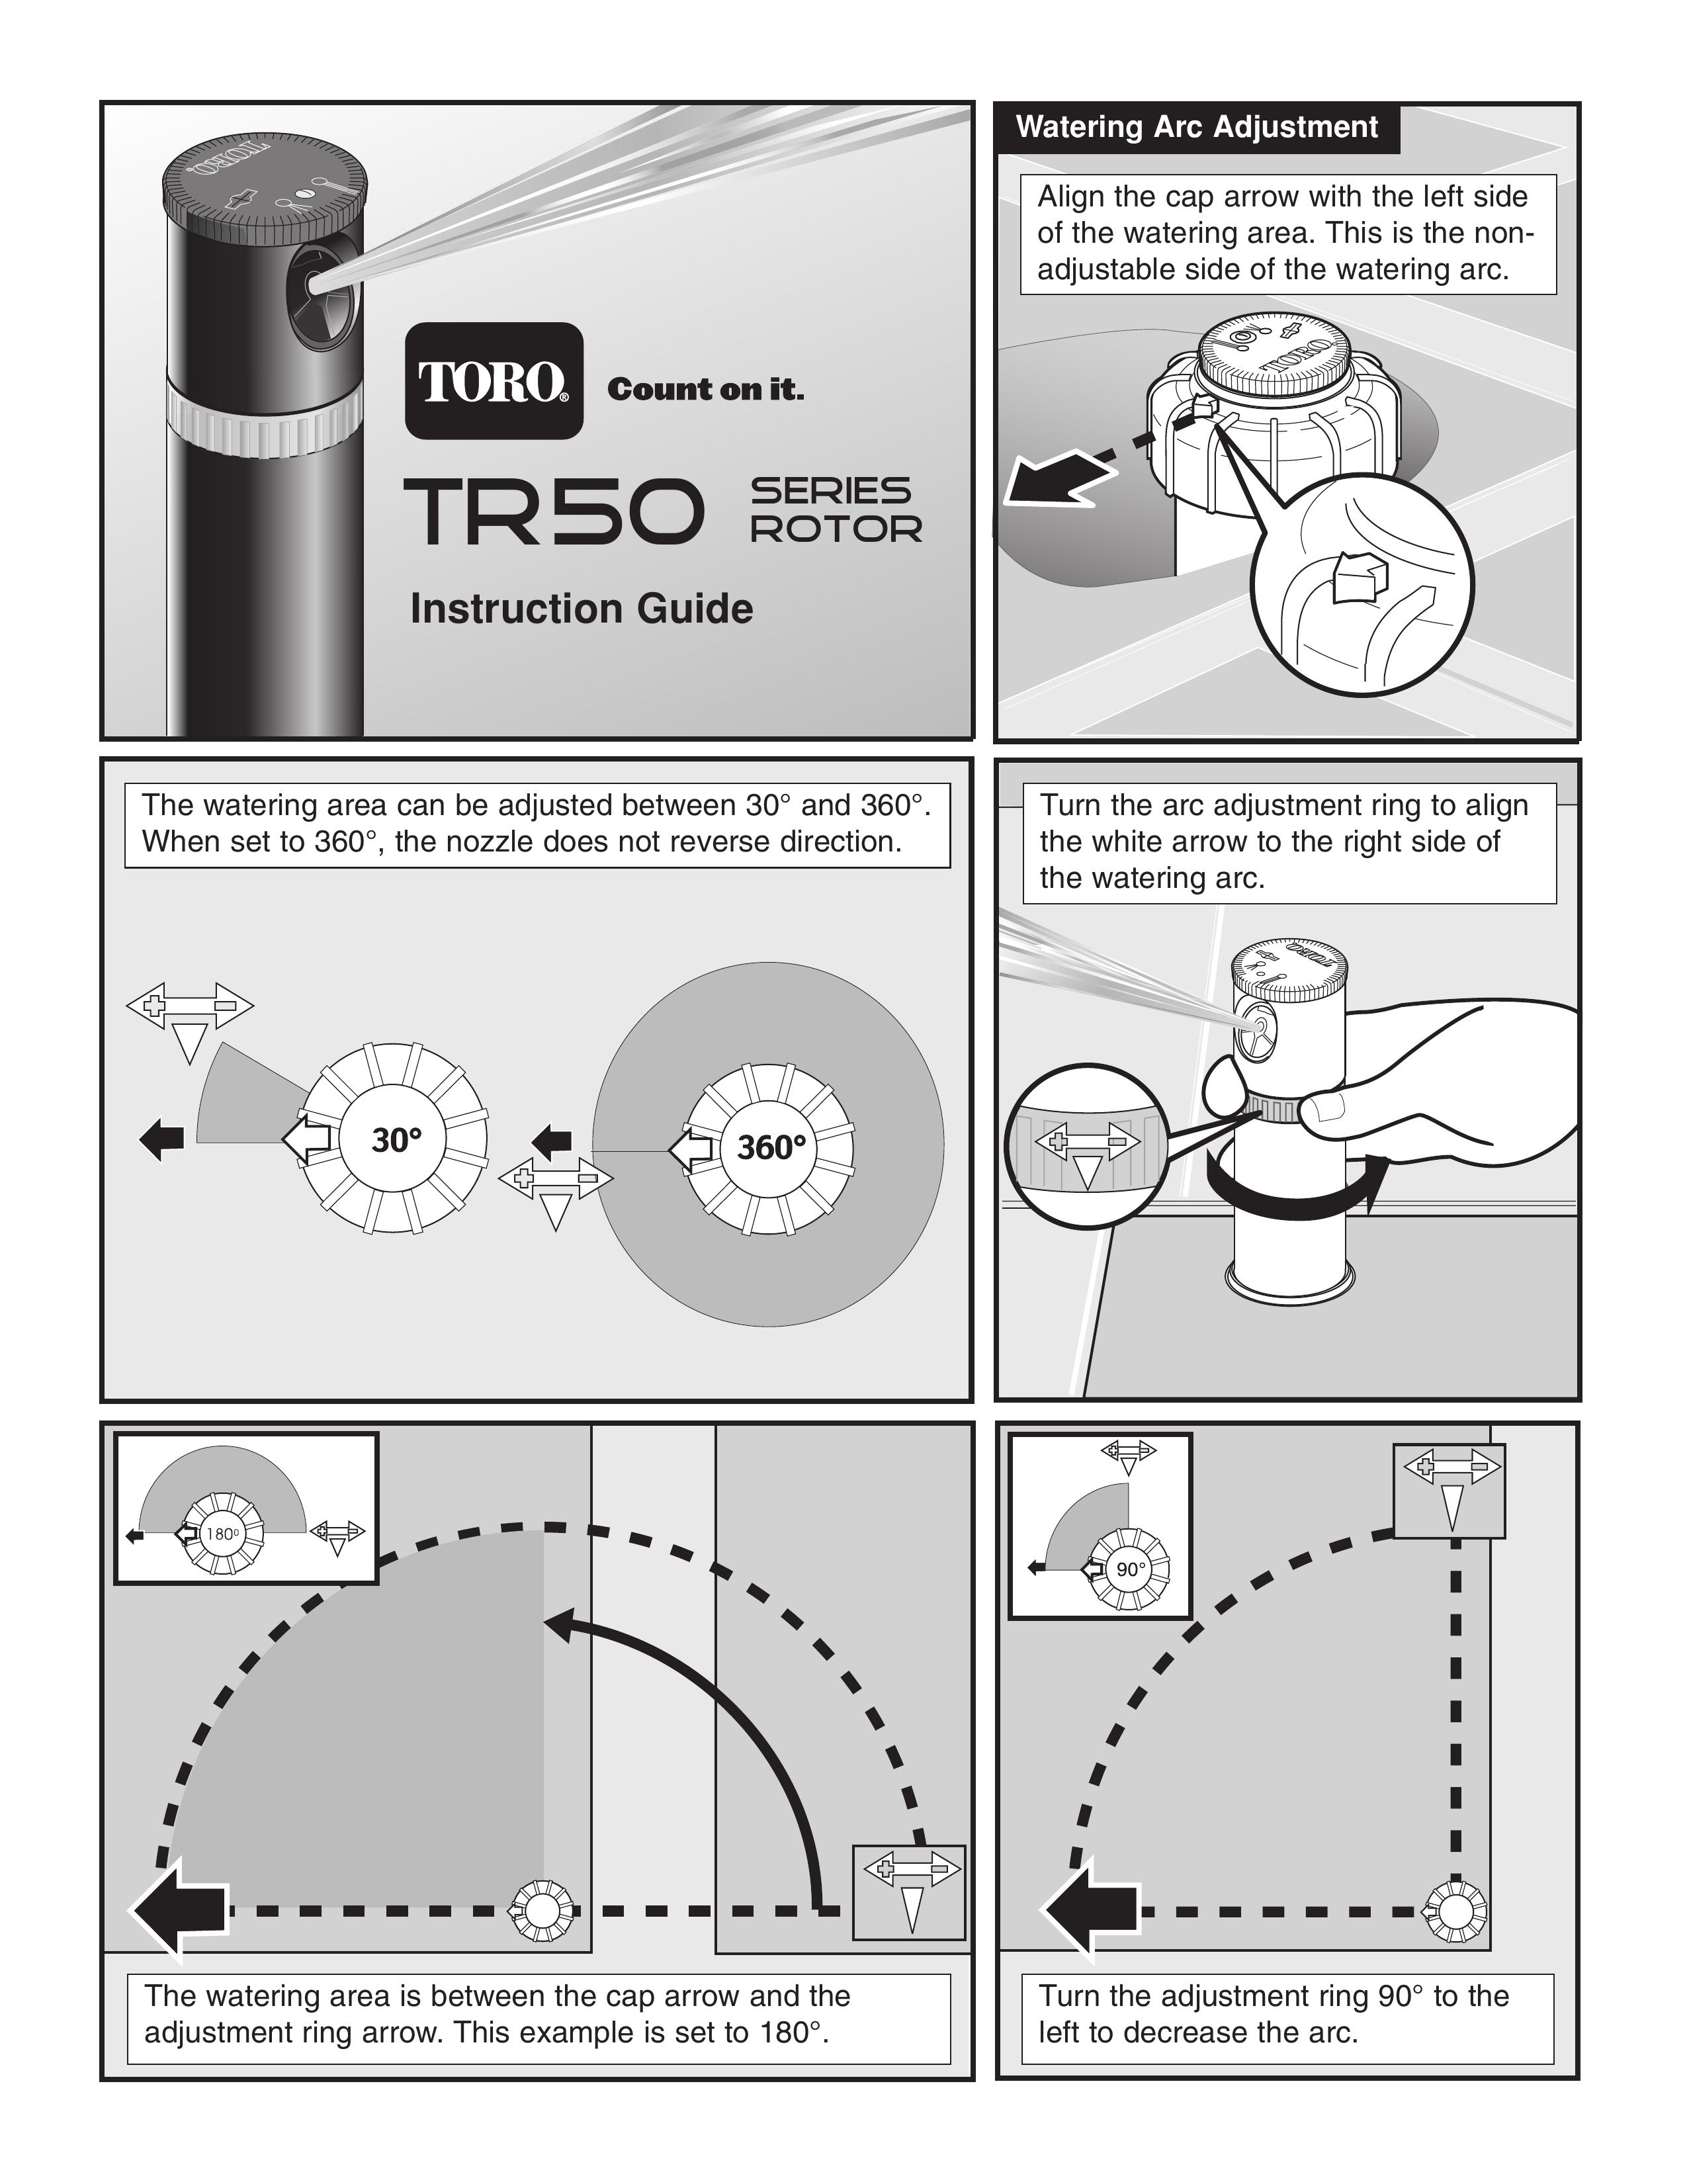 Toro TR50 Sprinkler User Manual